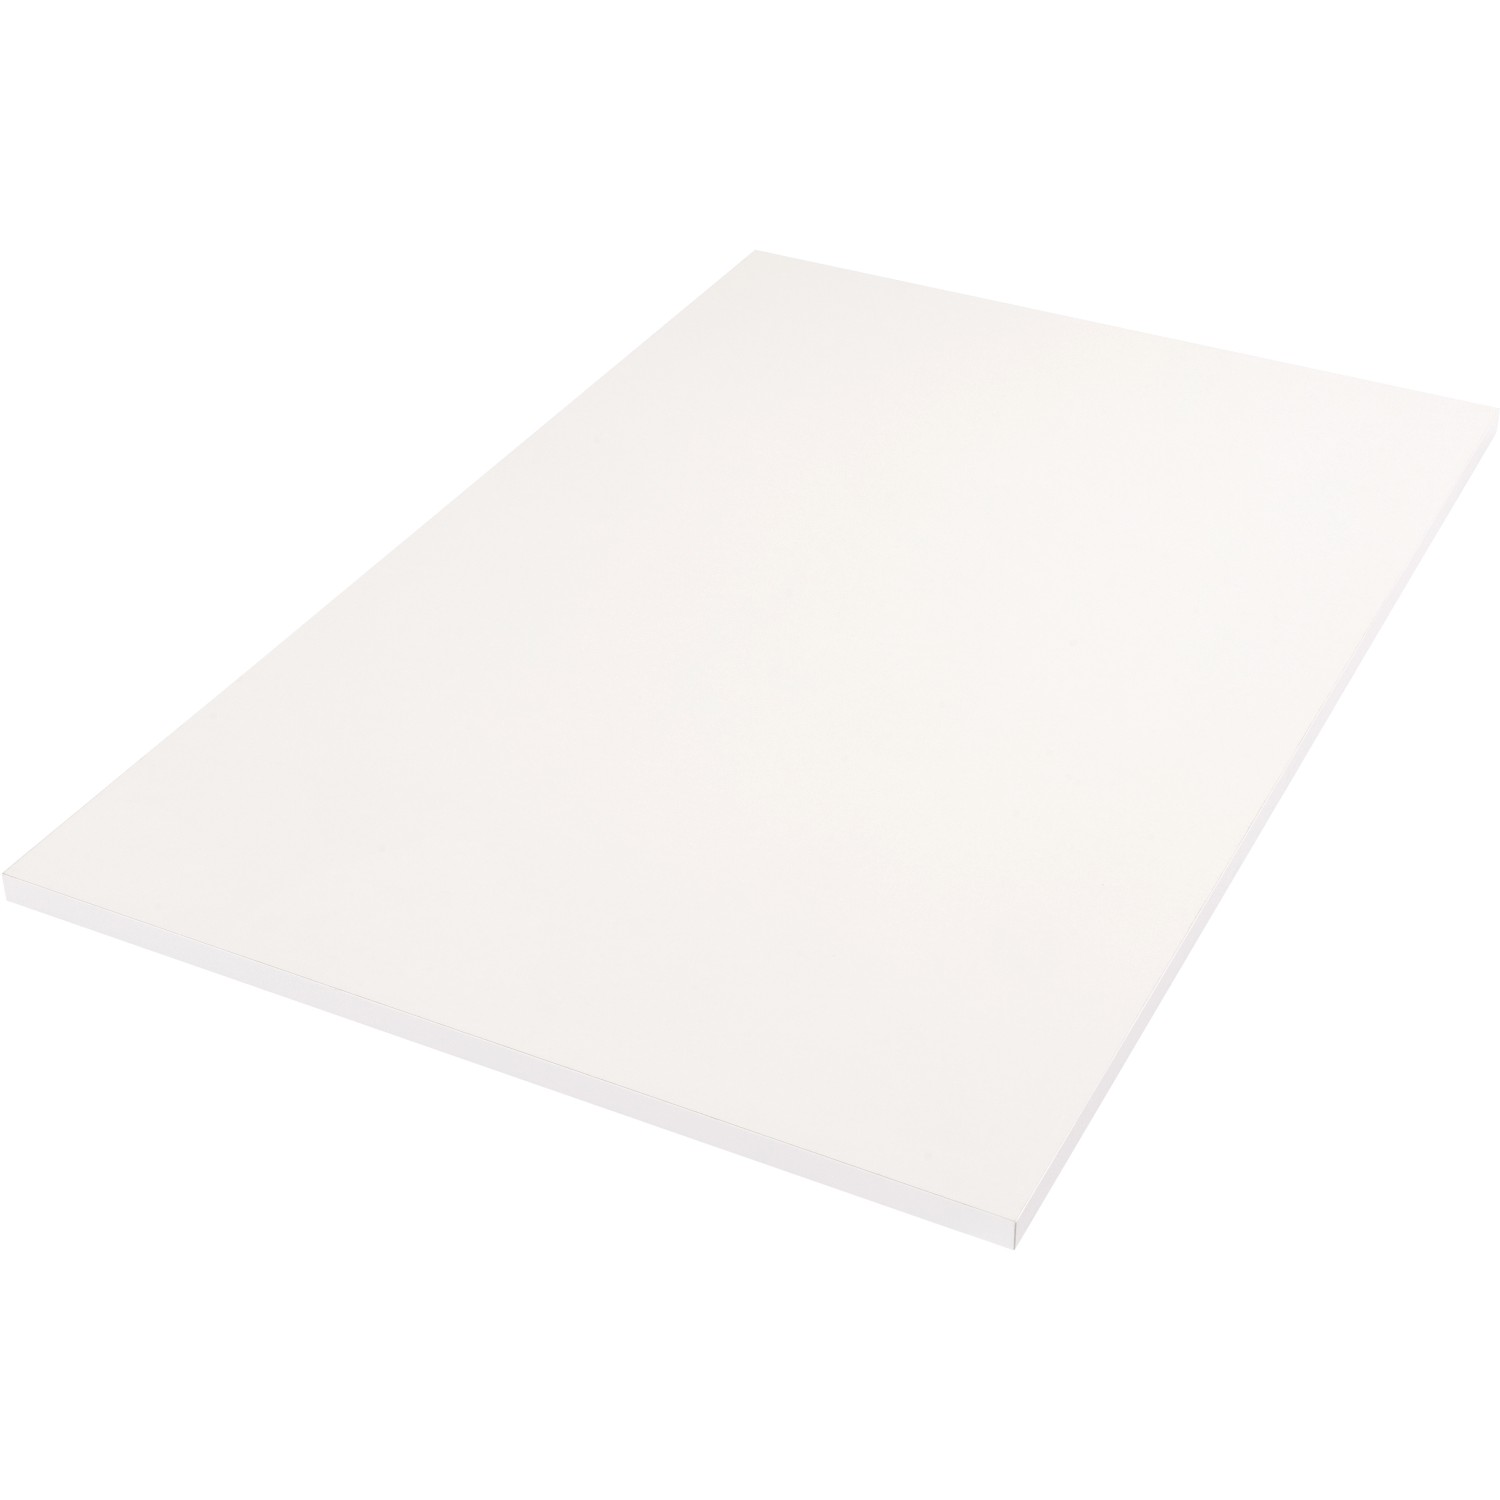 Tischplatte Weiß 120 cm x 80 cm x 2,5 cm